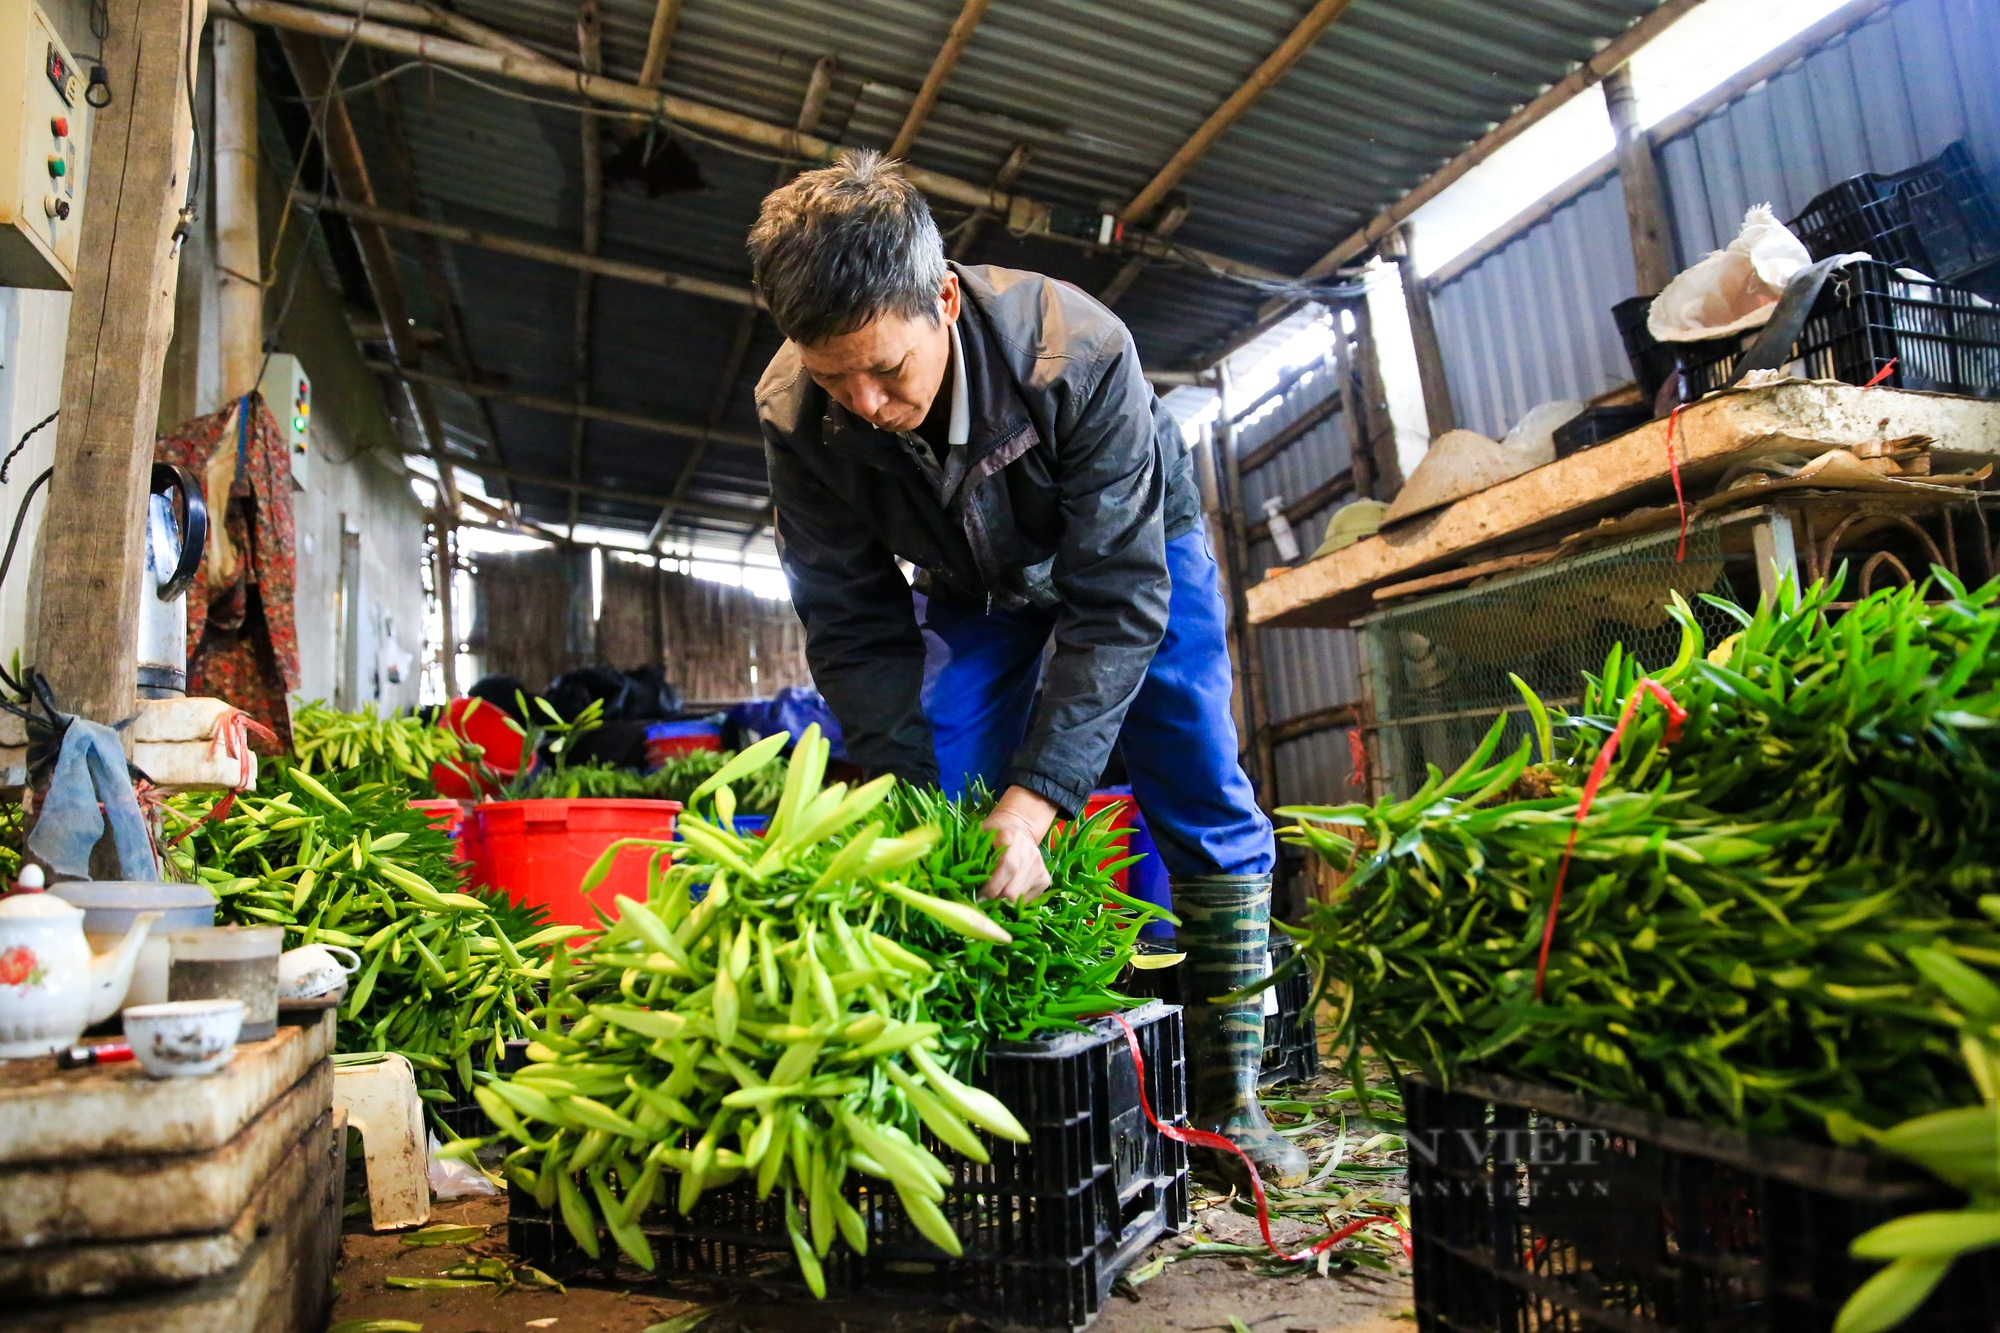 Hoa loa kèn bung nở, nông dân Hà Nội thu hàng chục triệu mỗi ngày - Ảnh 10.